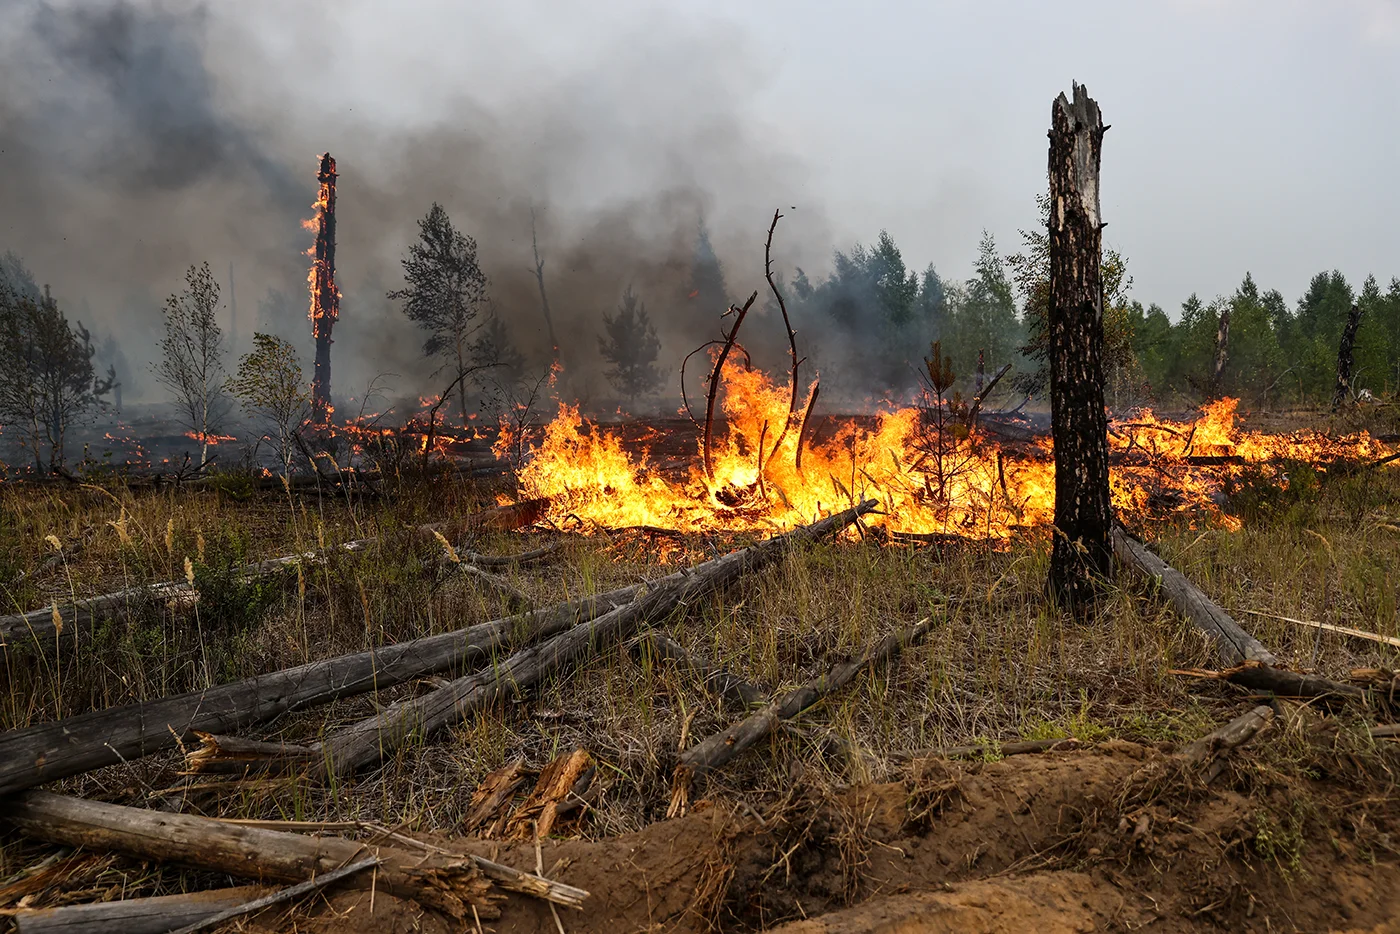 Пожар в лесу какой фактор